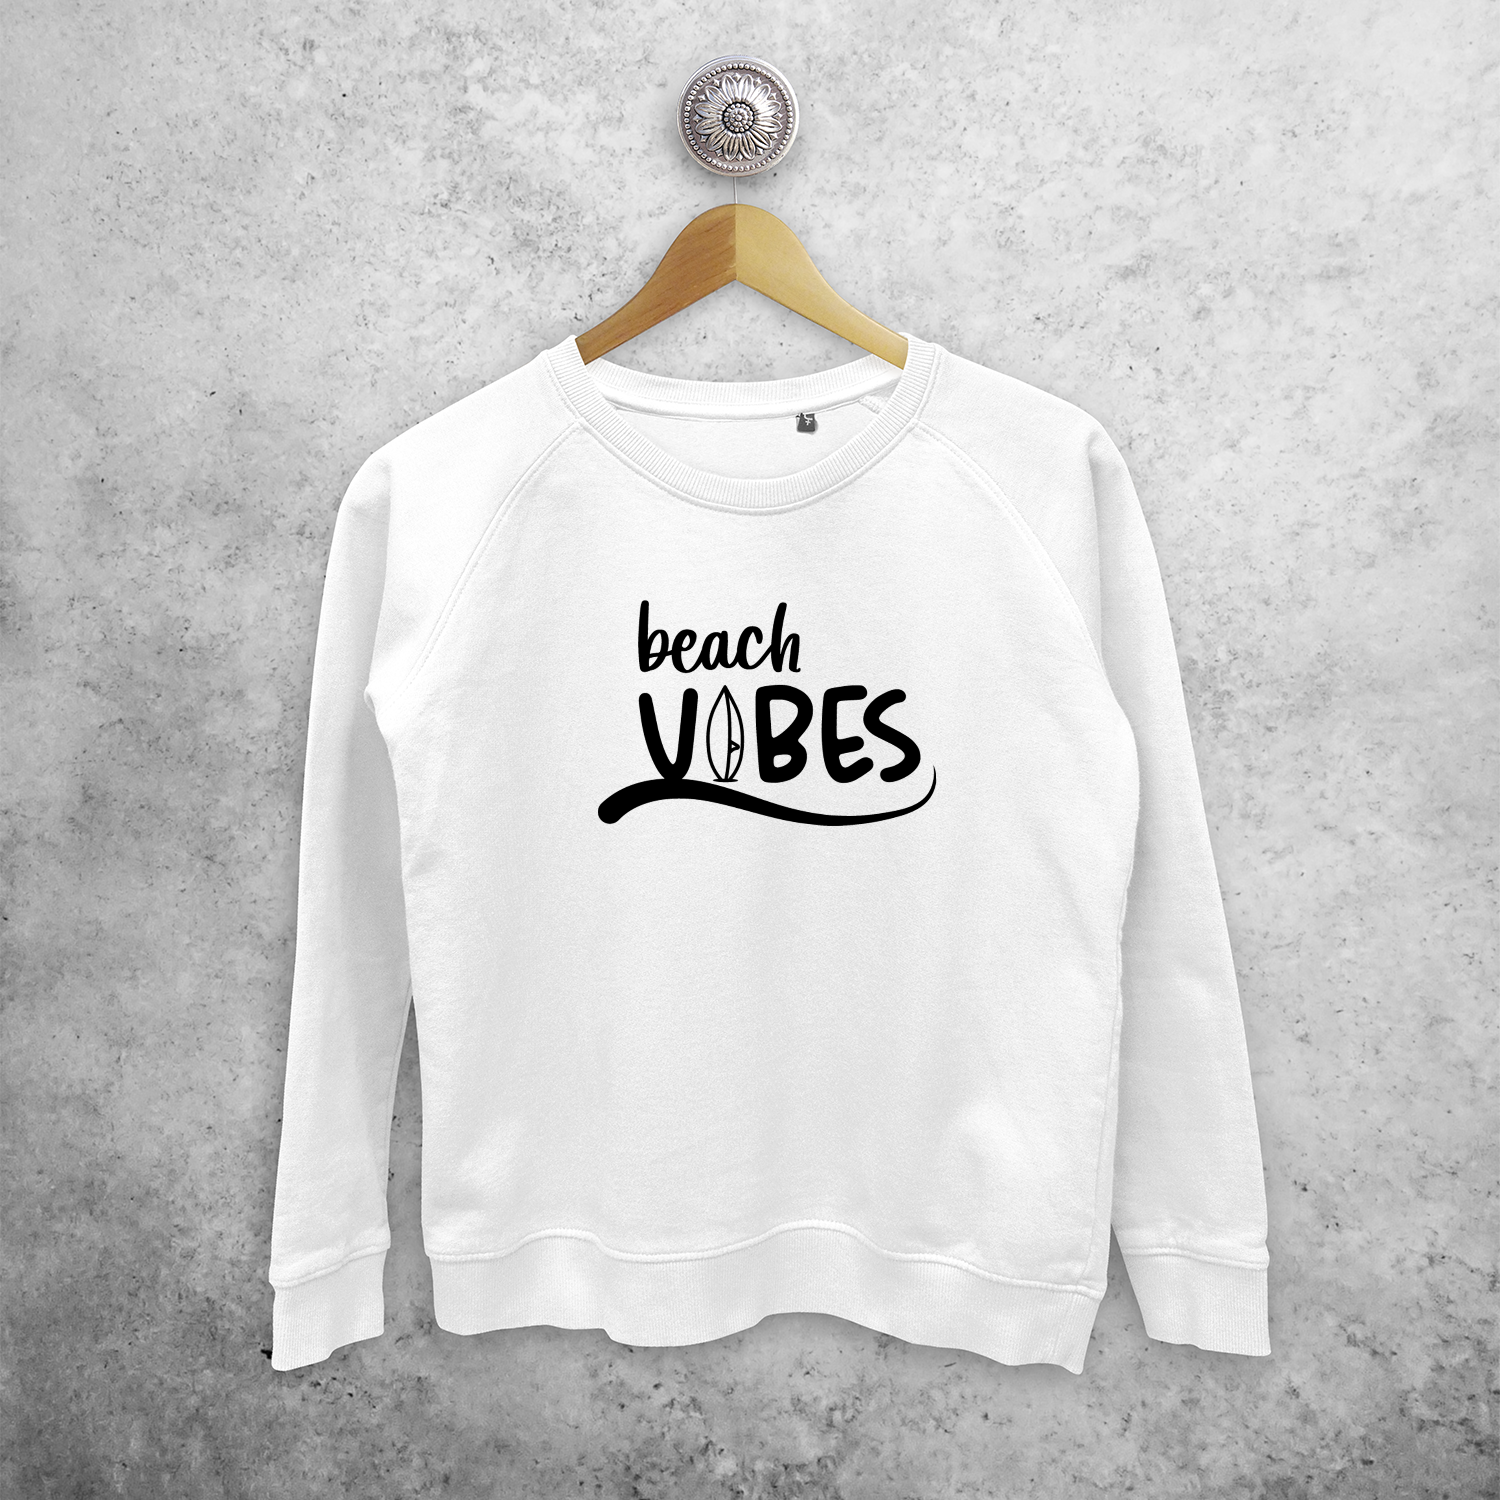 'Beach vibes' sweater